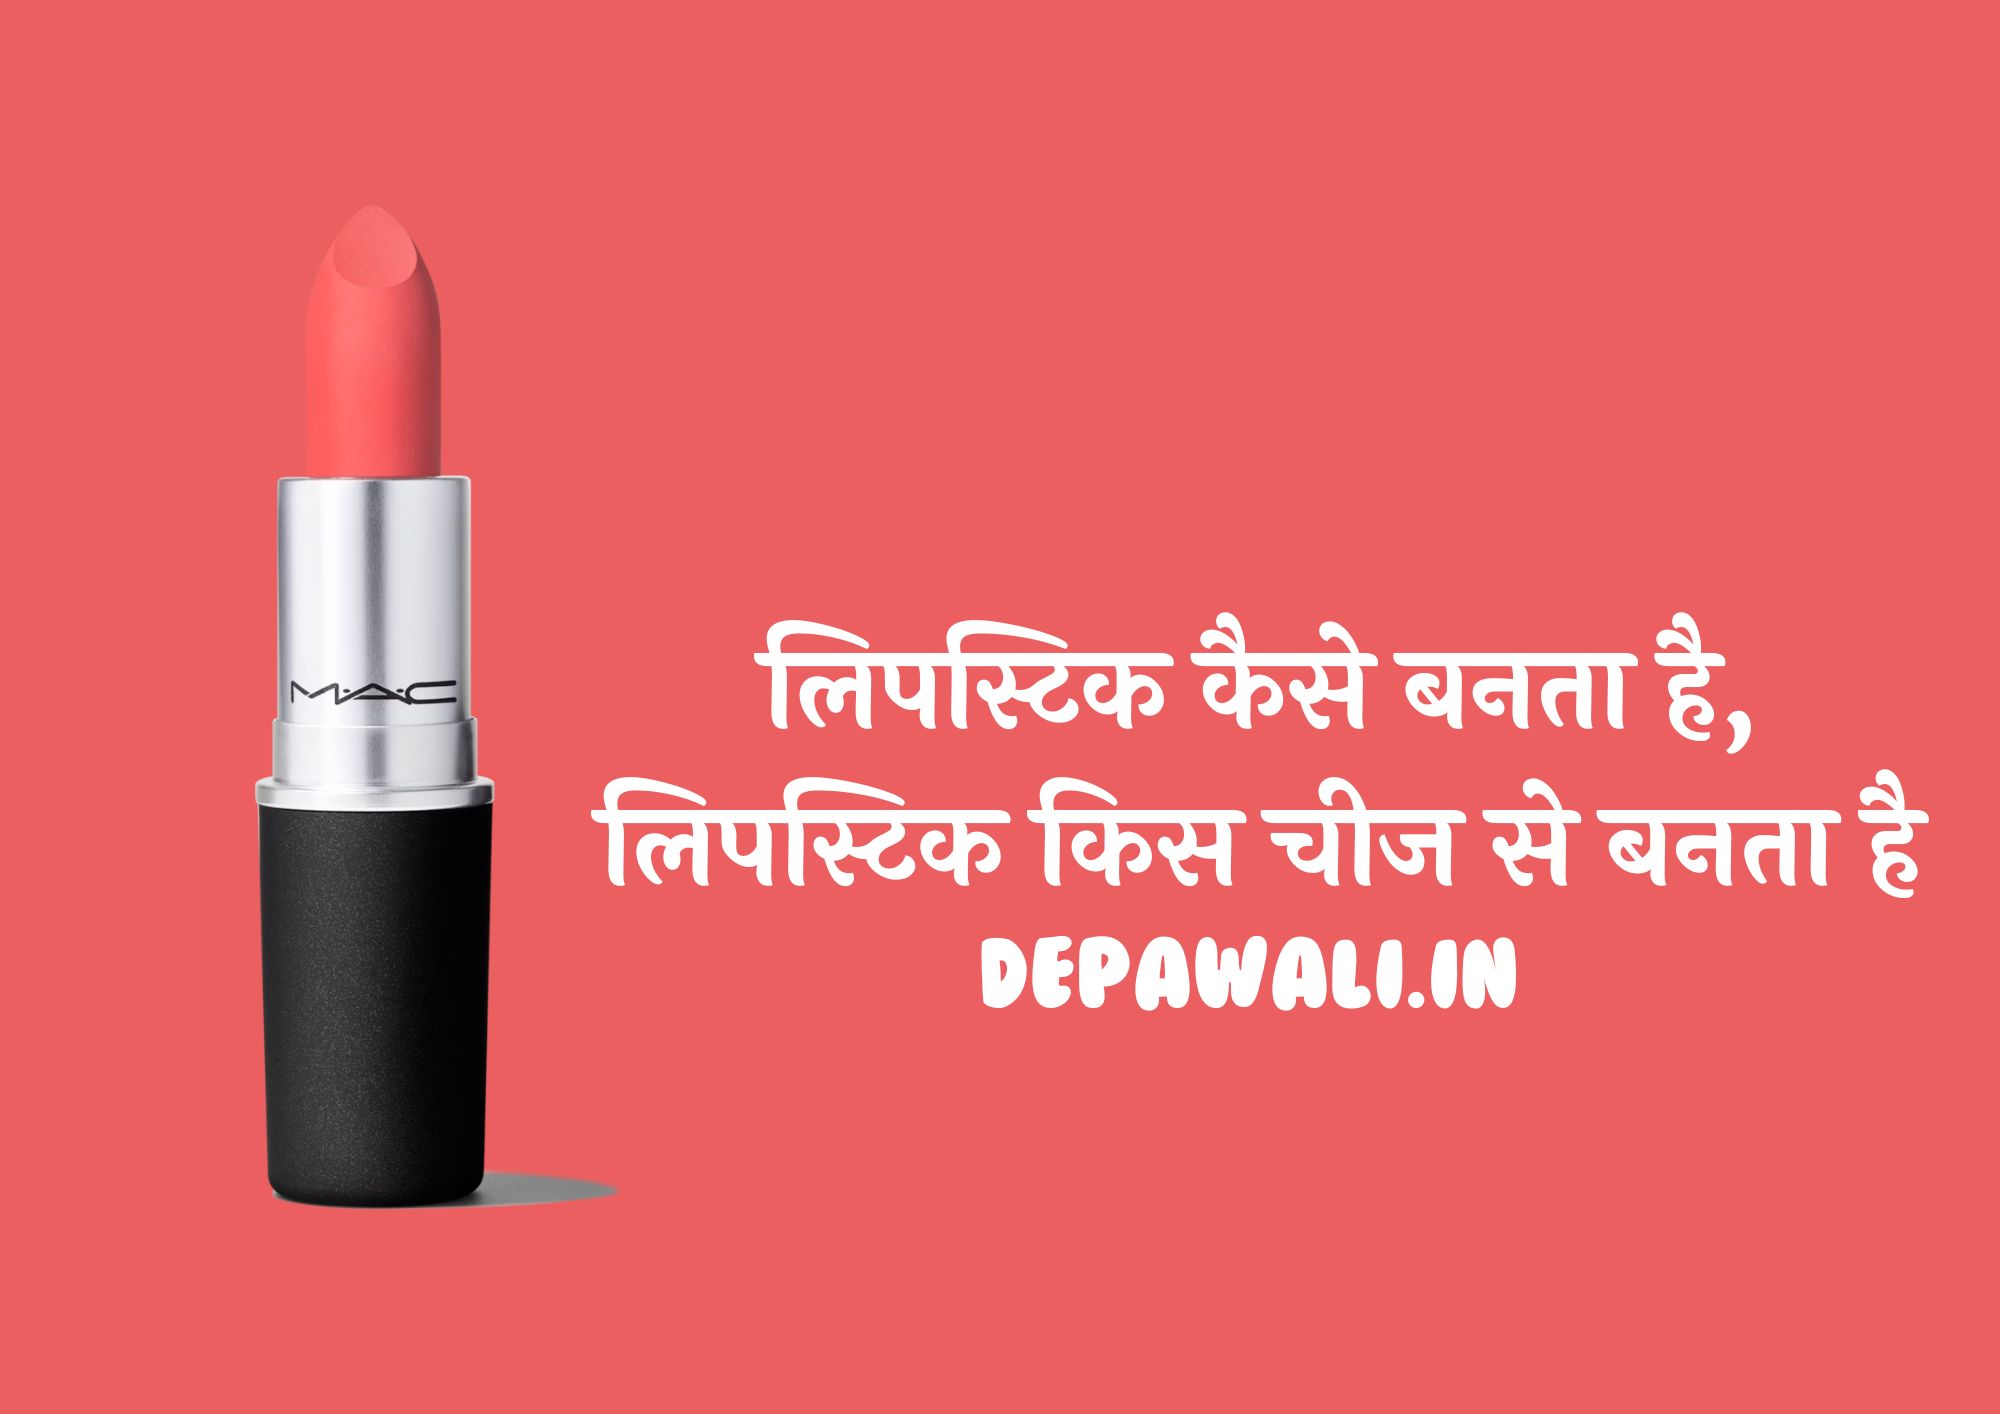 लिपस्टिक कैसे बनता है, लिपस्टिक किस चीज से बनता है - Lipstick Kaise Banti Hai (Lipstick Kaise Banta Hai In Hindi)